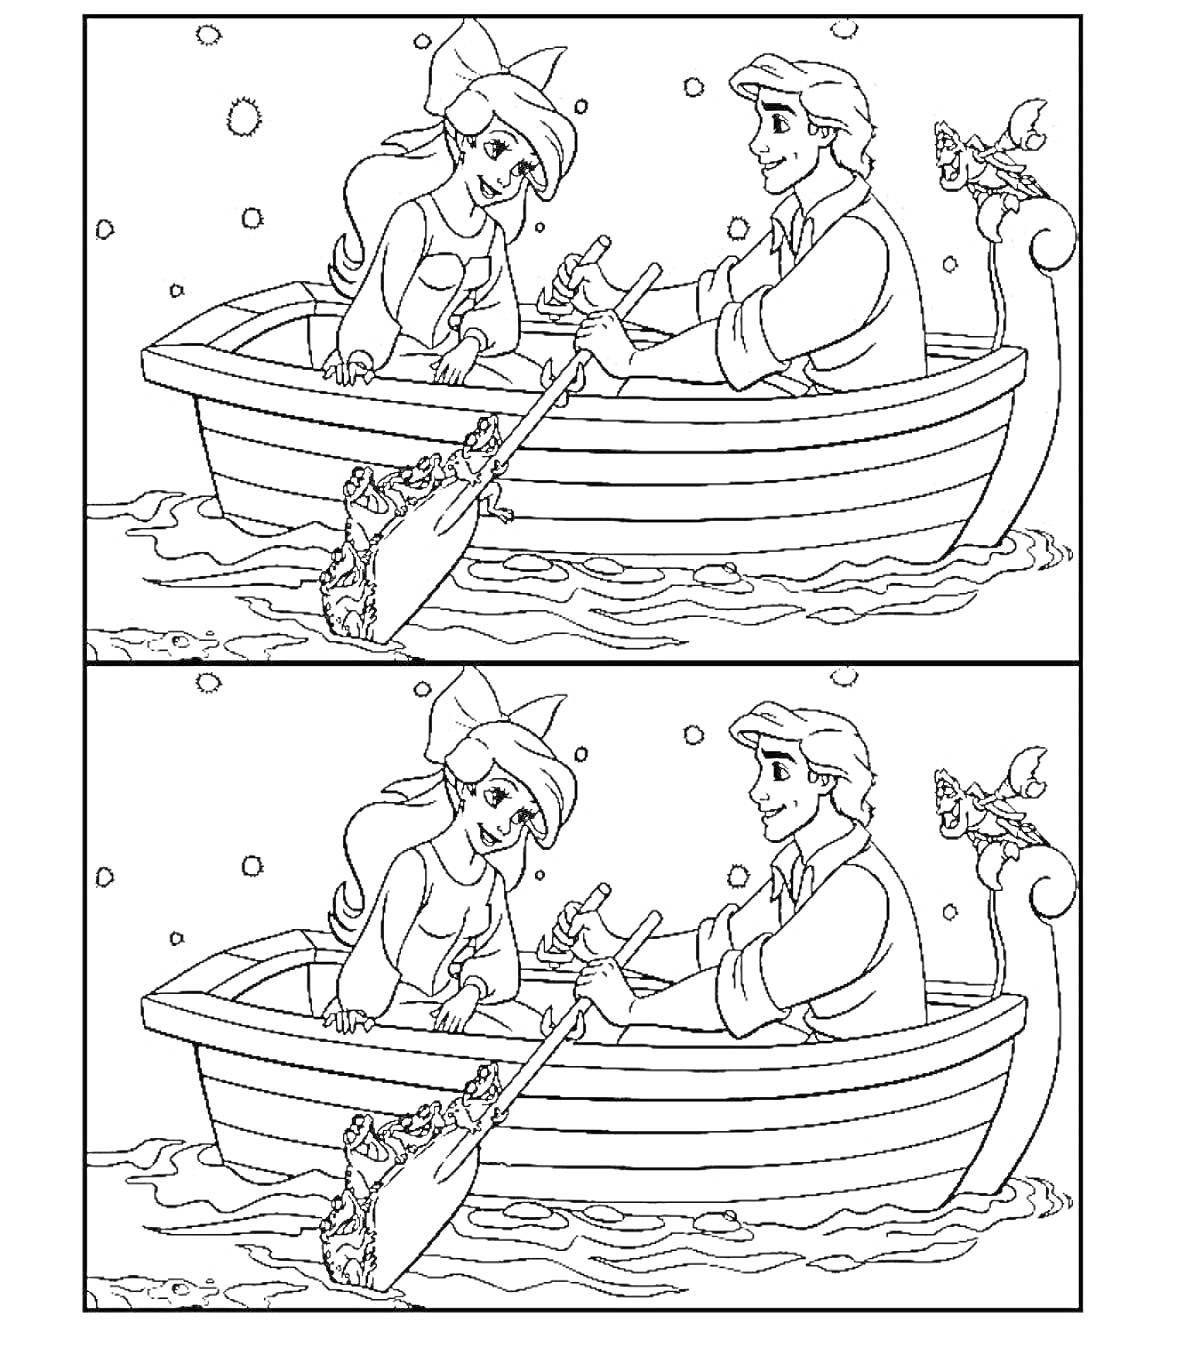 Раскраска - Найди отличия. Русалочка и юноша в лодке, сидят напротив друг друга, держат руки, плывут по воде, на носу лодки рулевая колонка с птицей, весло справа в воде. Две картинки для поиска отличий.